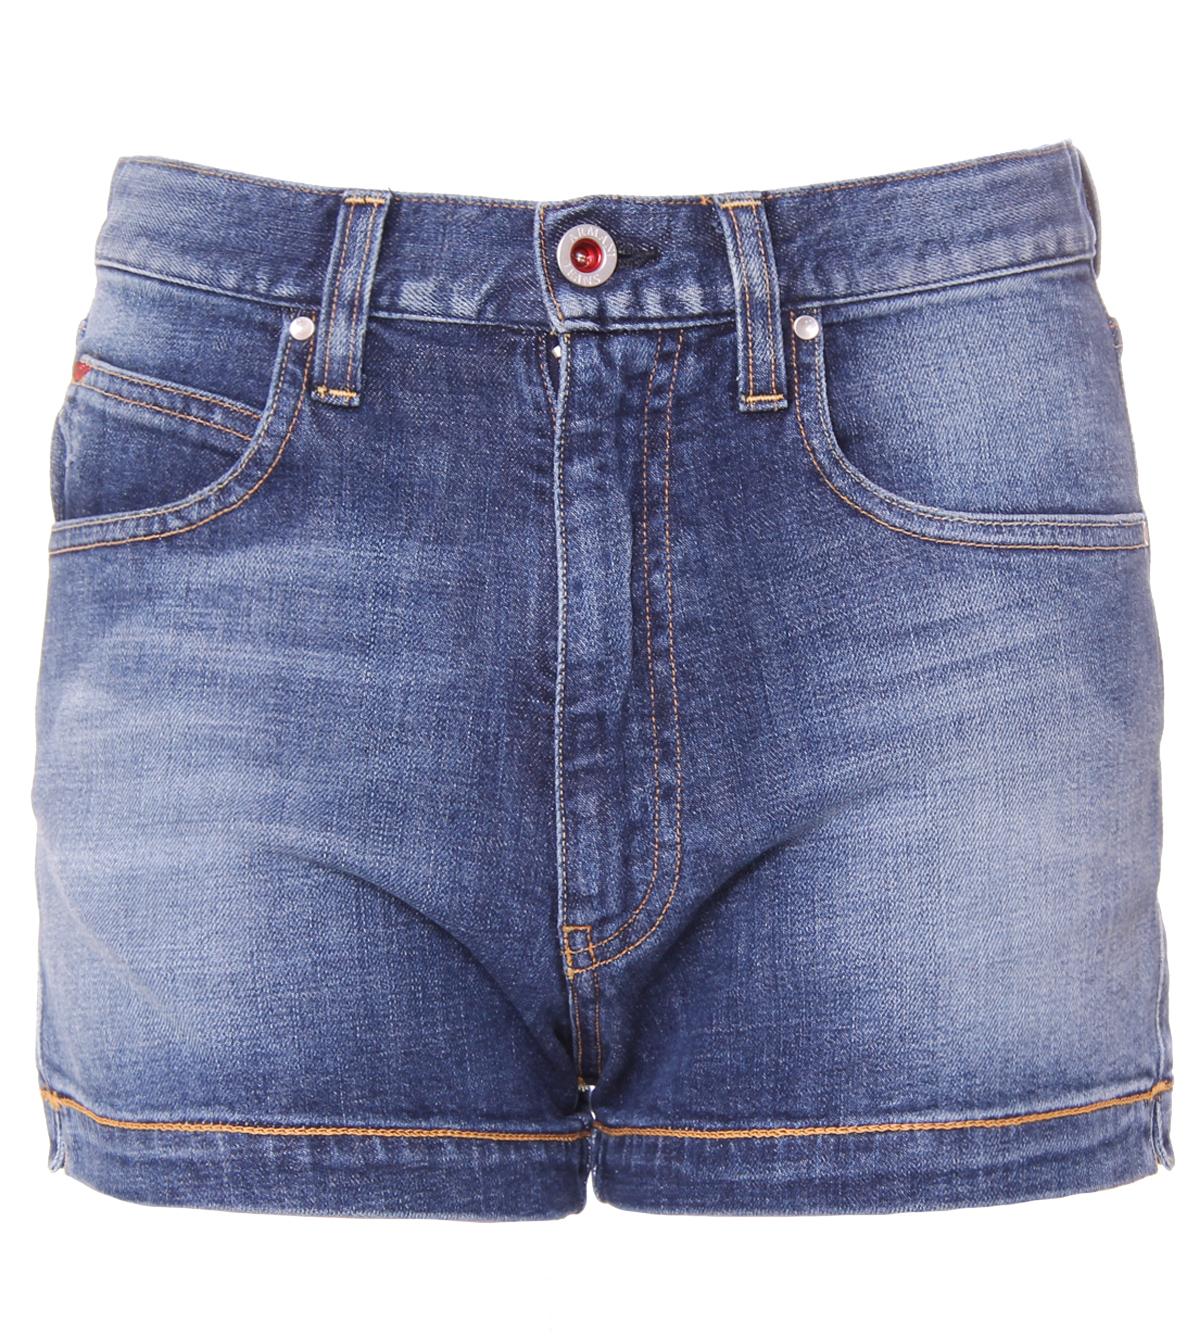 Foto Armani Jeans Mid Blue High Waist Slim Fit Denim Shorts foto 29778